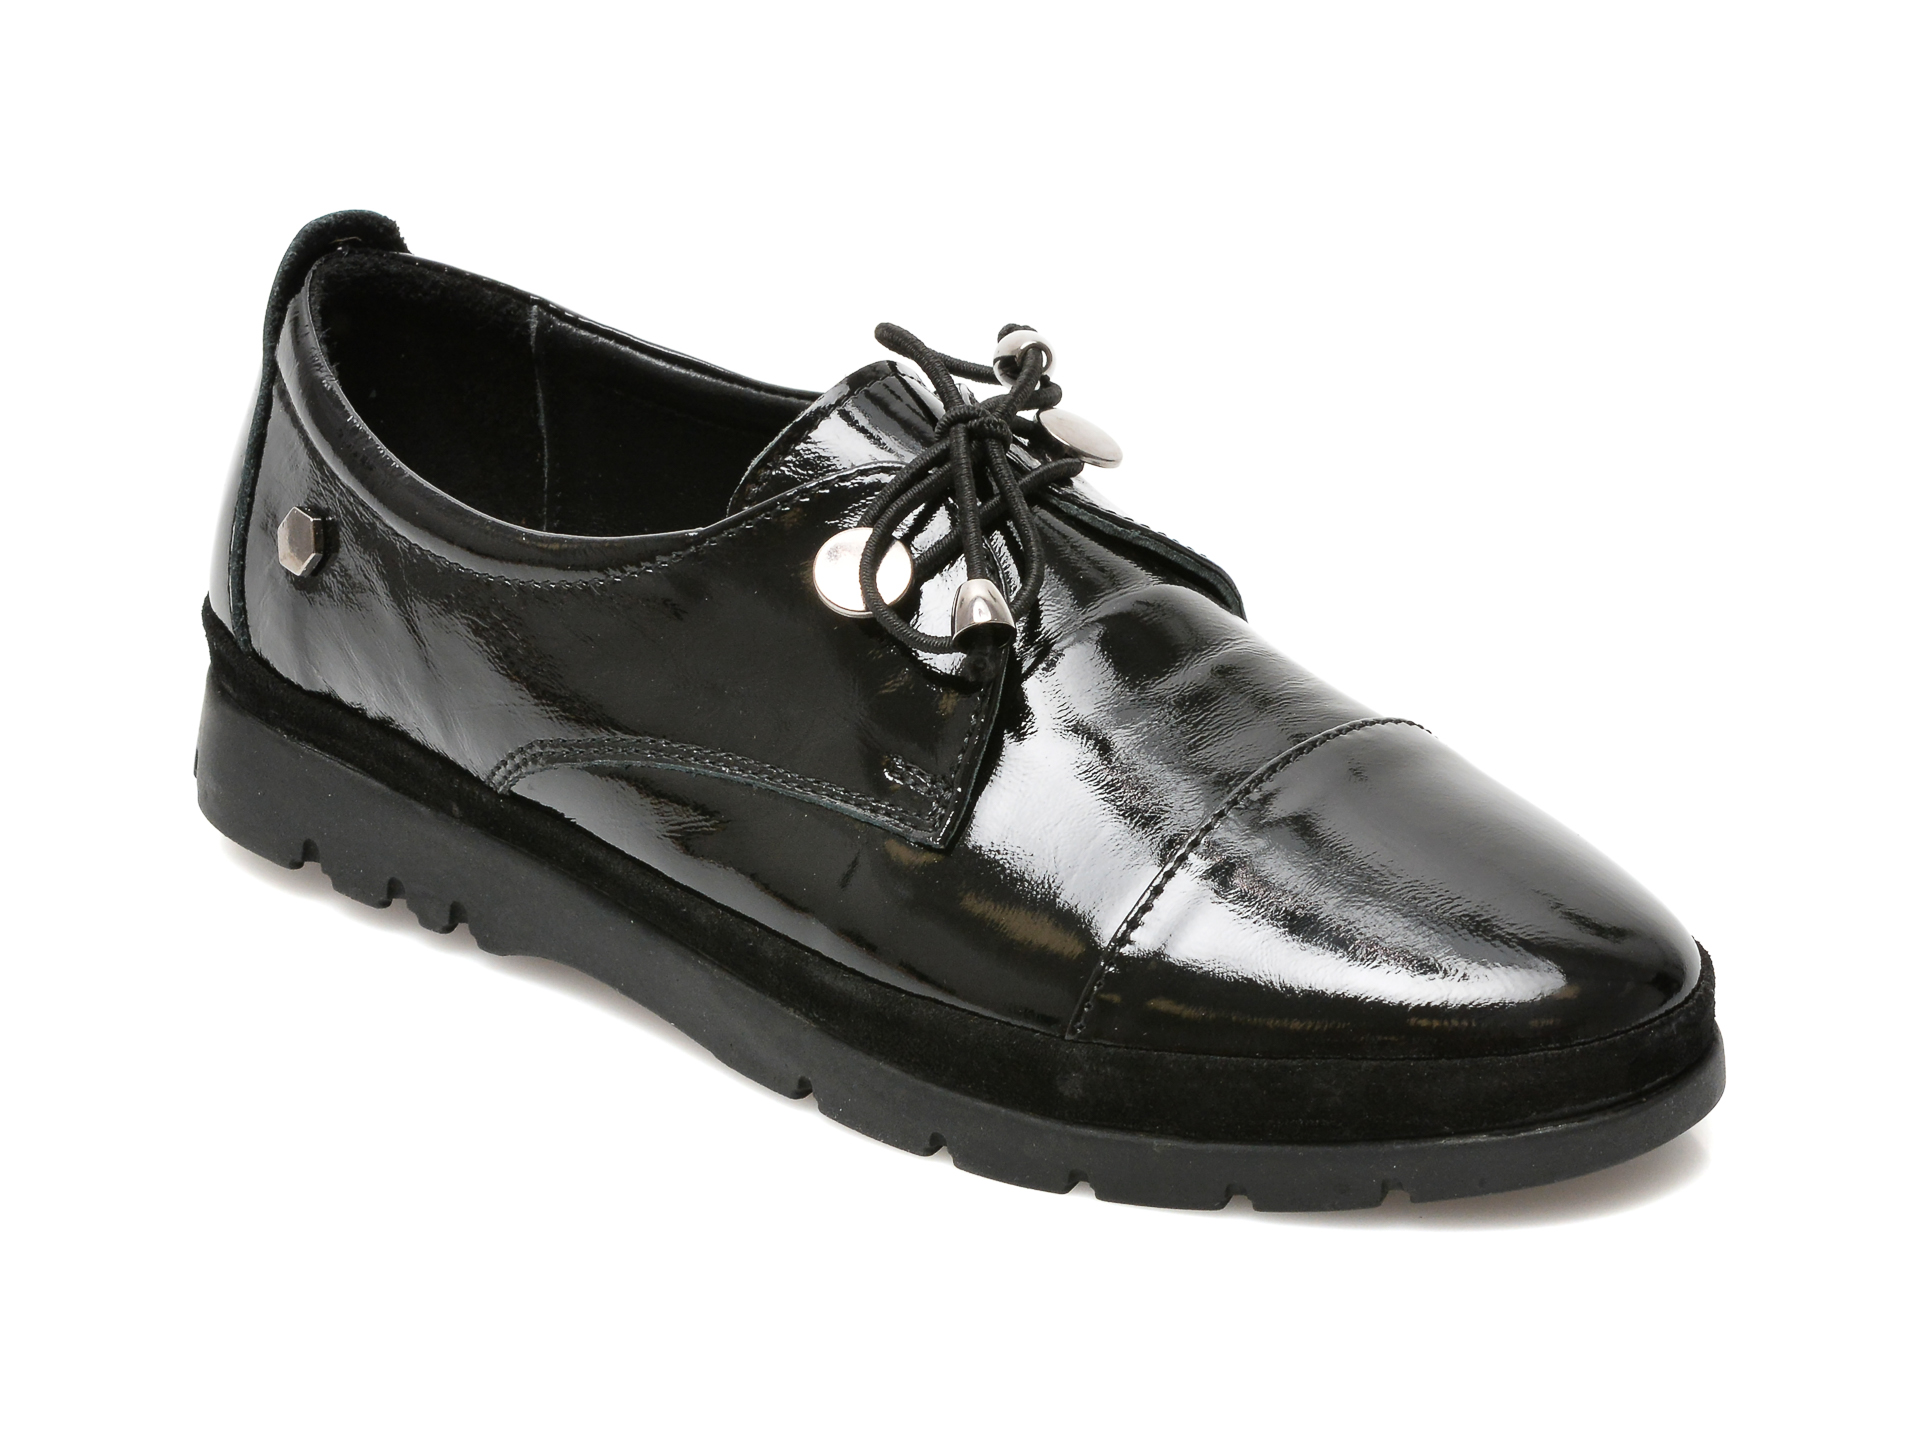 Pantofi FLAVIA PASSINI negri, 23999, din piele naturala lacuita Flavia Passini imagine reduceri